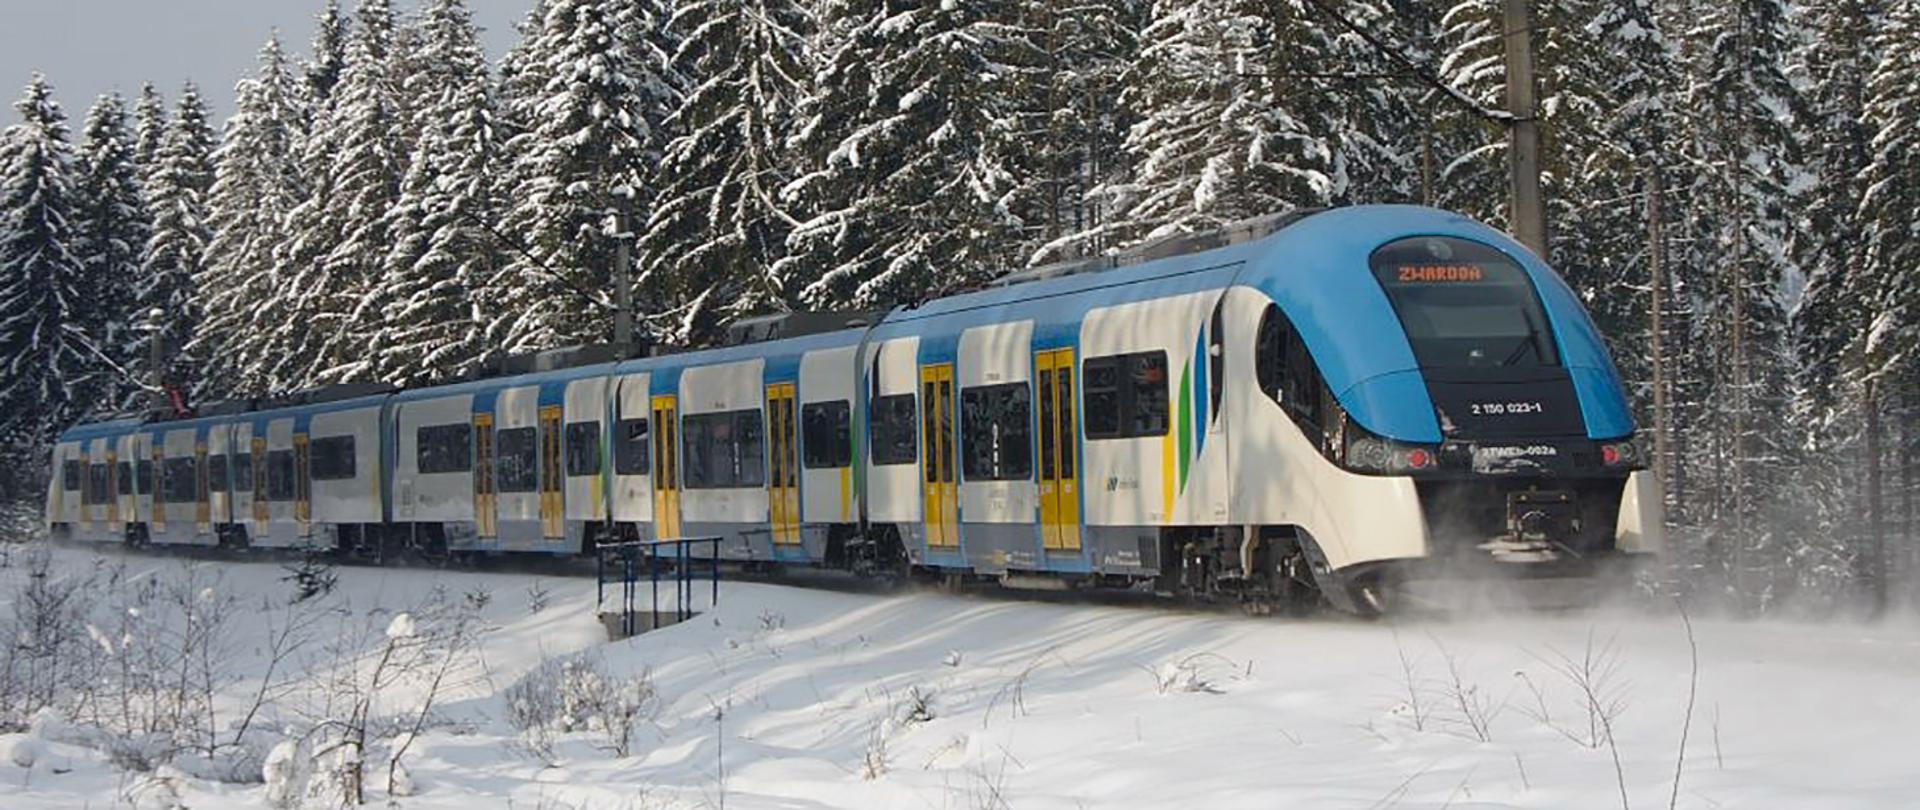 Biało-niebieski pociąg jadący po zaśnieżonych torach w tle pokryte śniegiem iglaste drzewa